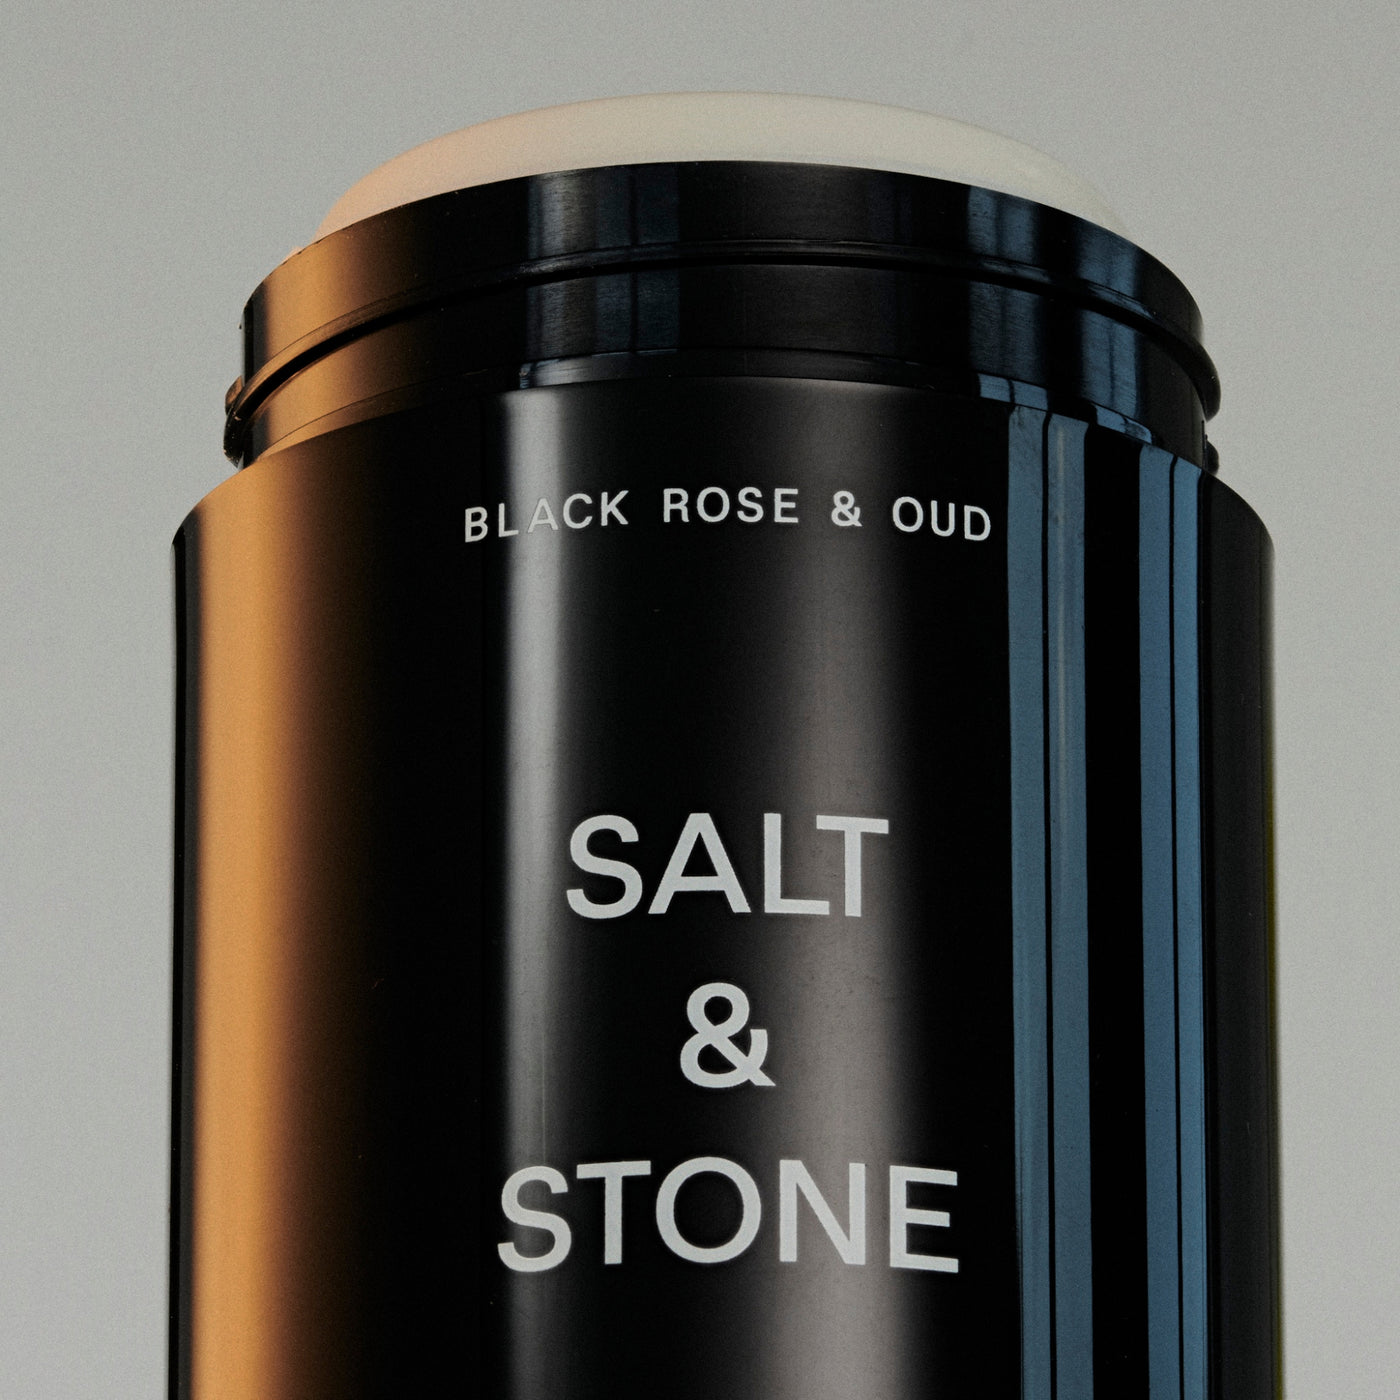 Black Rose & Oud Natural Deodorant